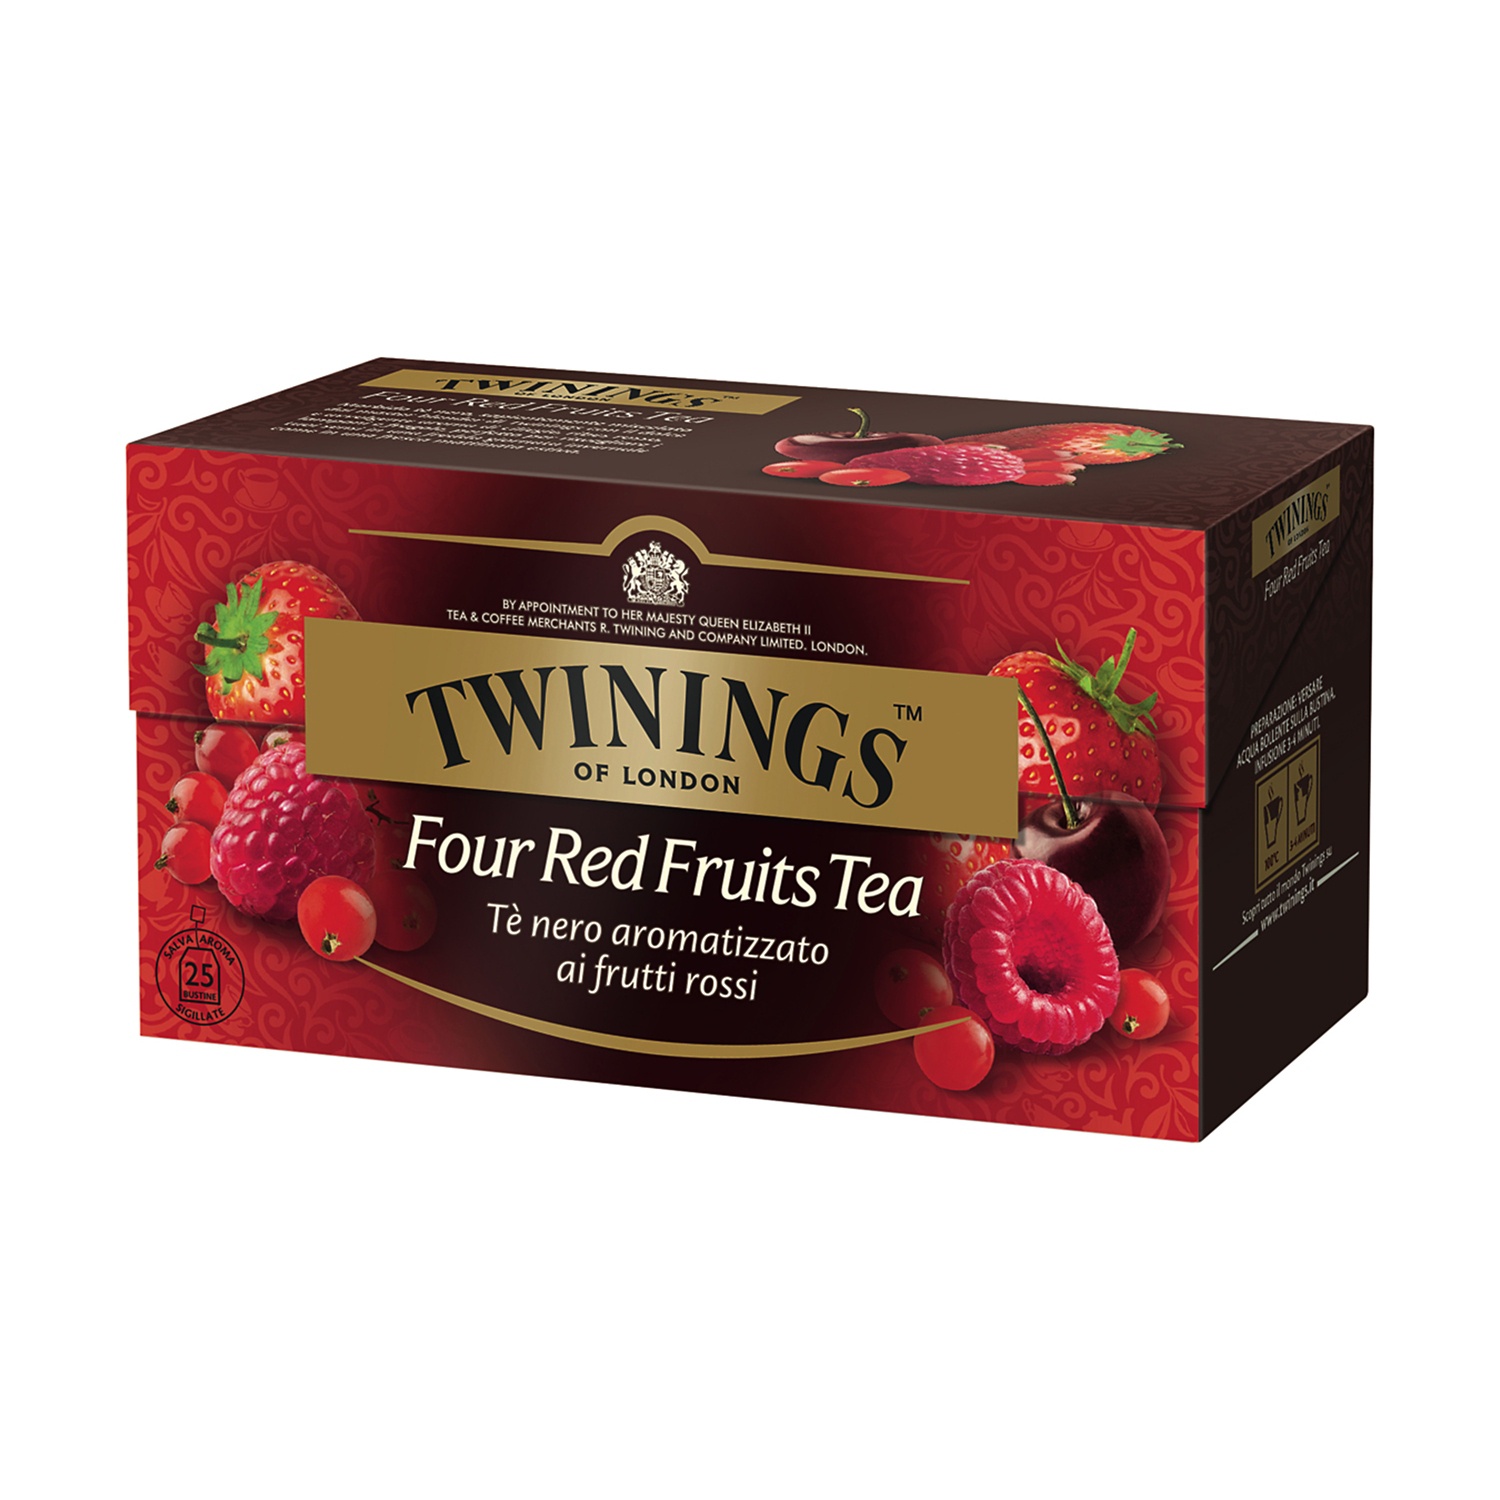 TWININGS Tè ai frutti rossi